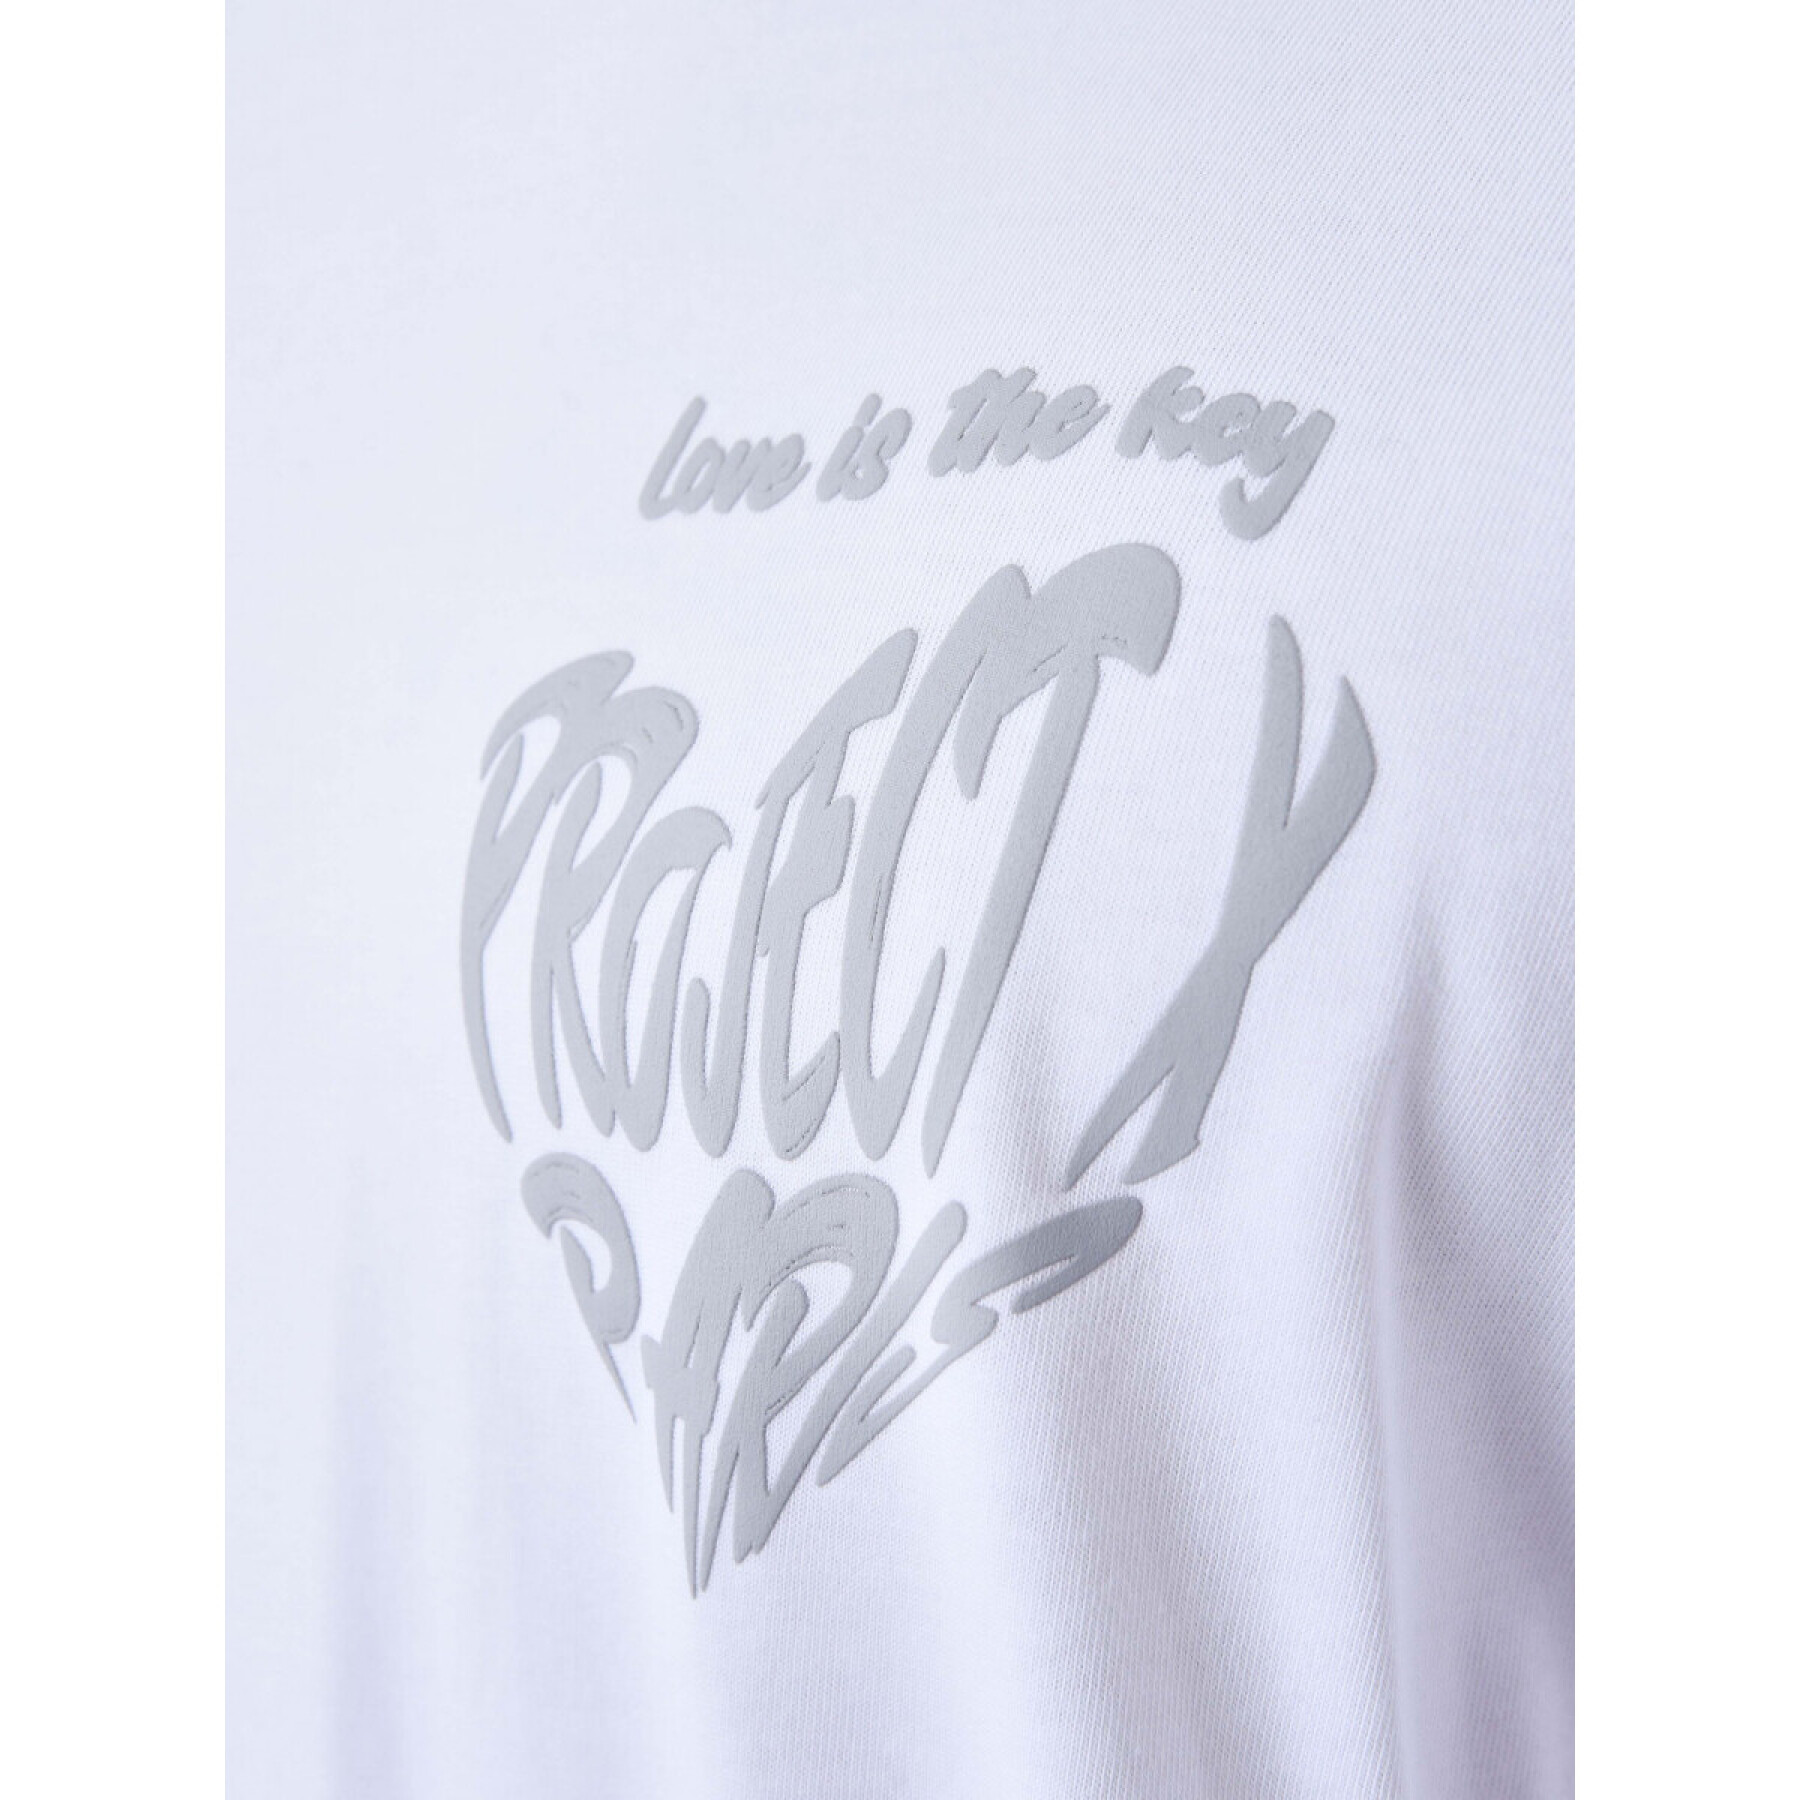 T-Shirt Herz von Project X Paris